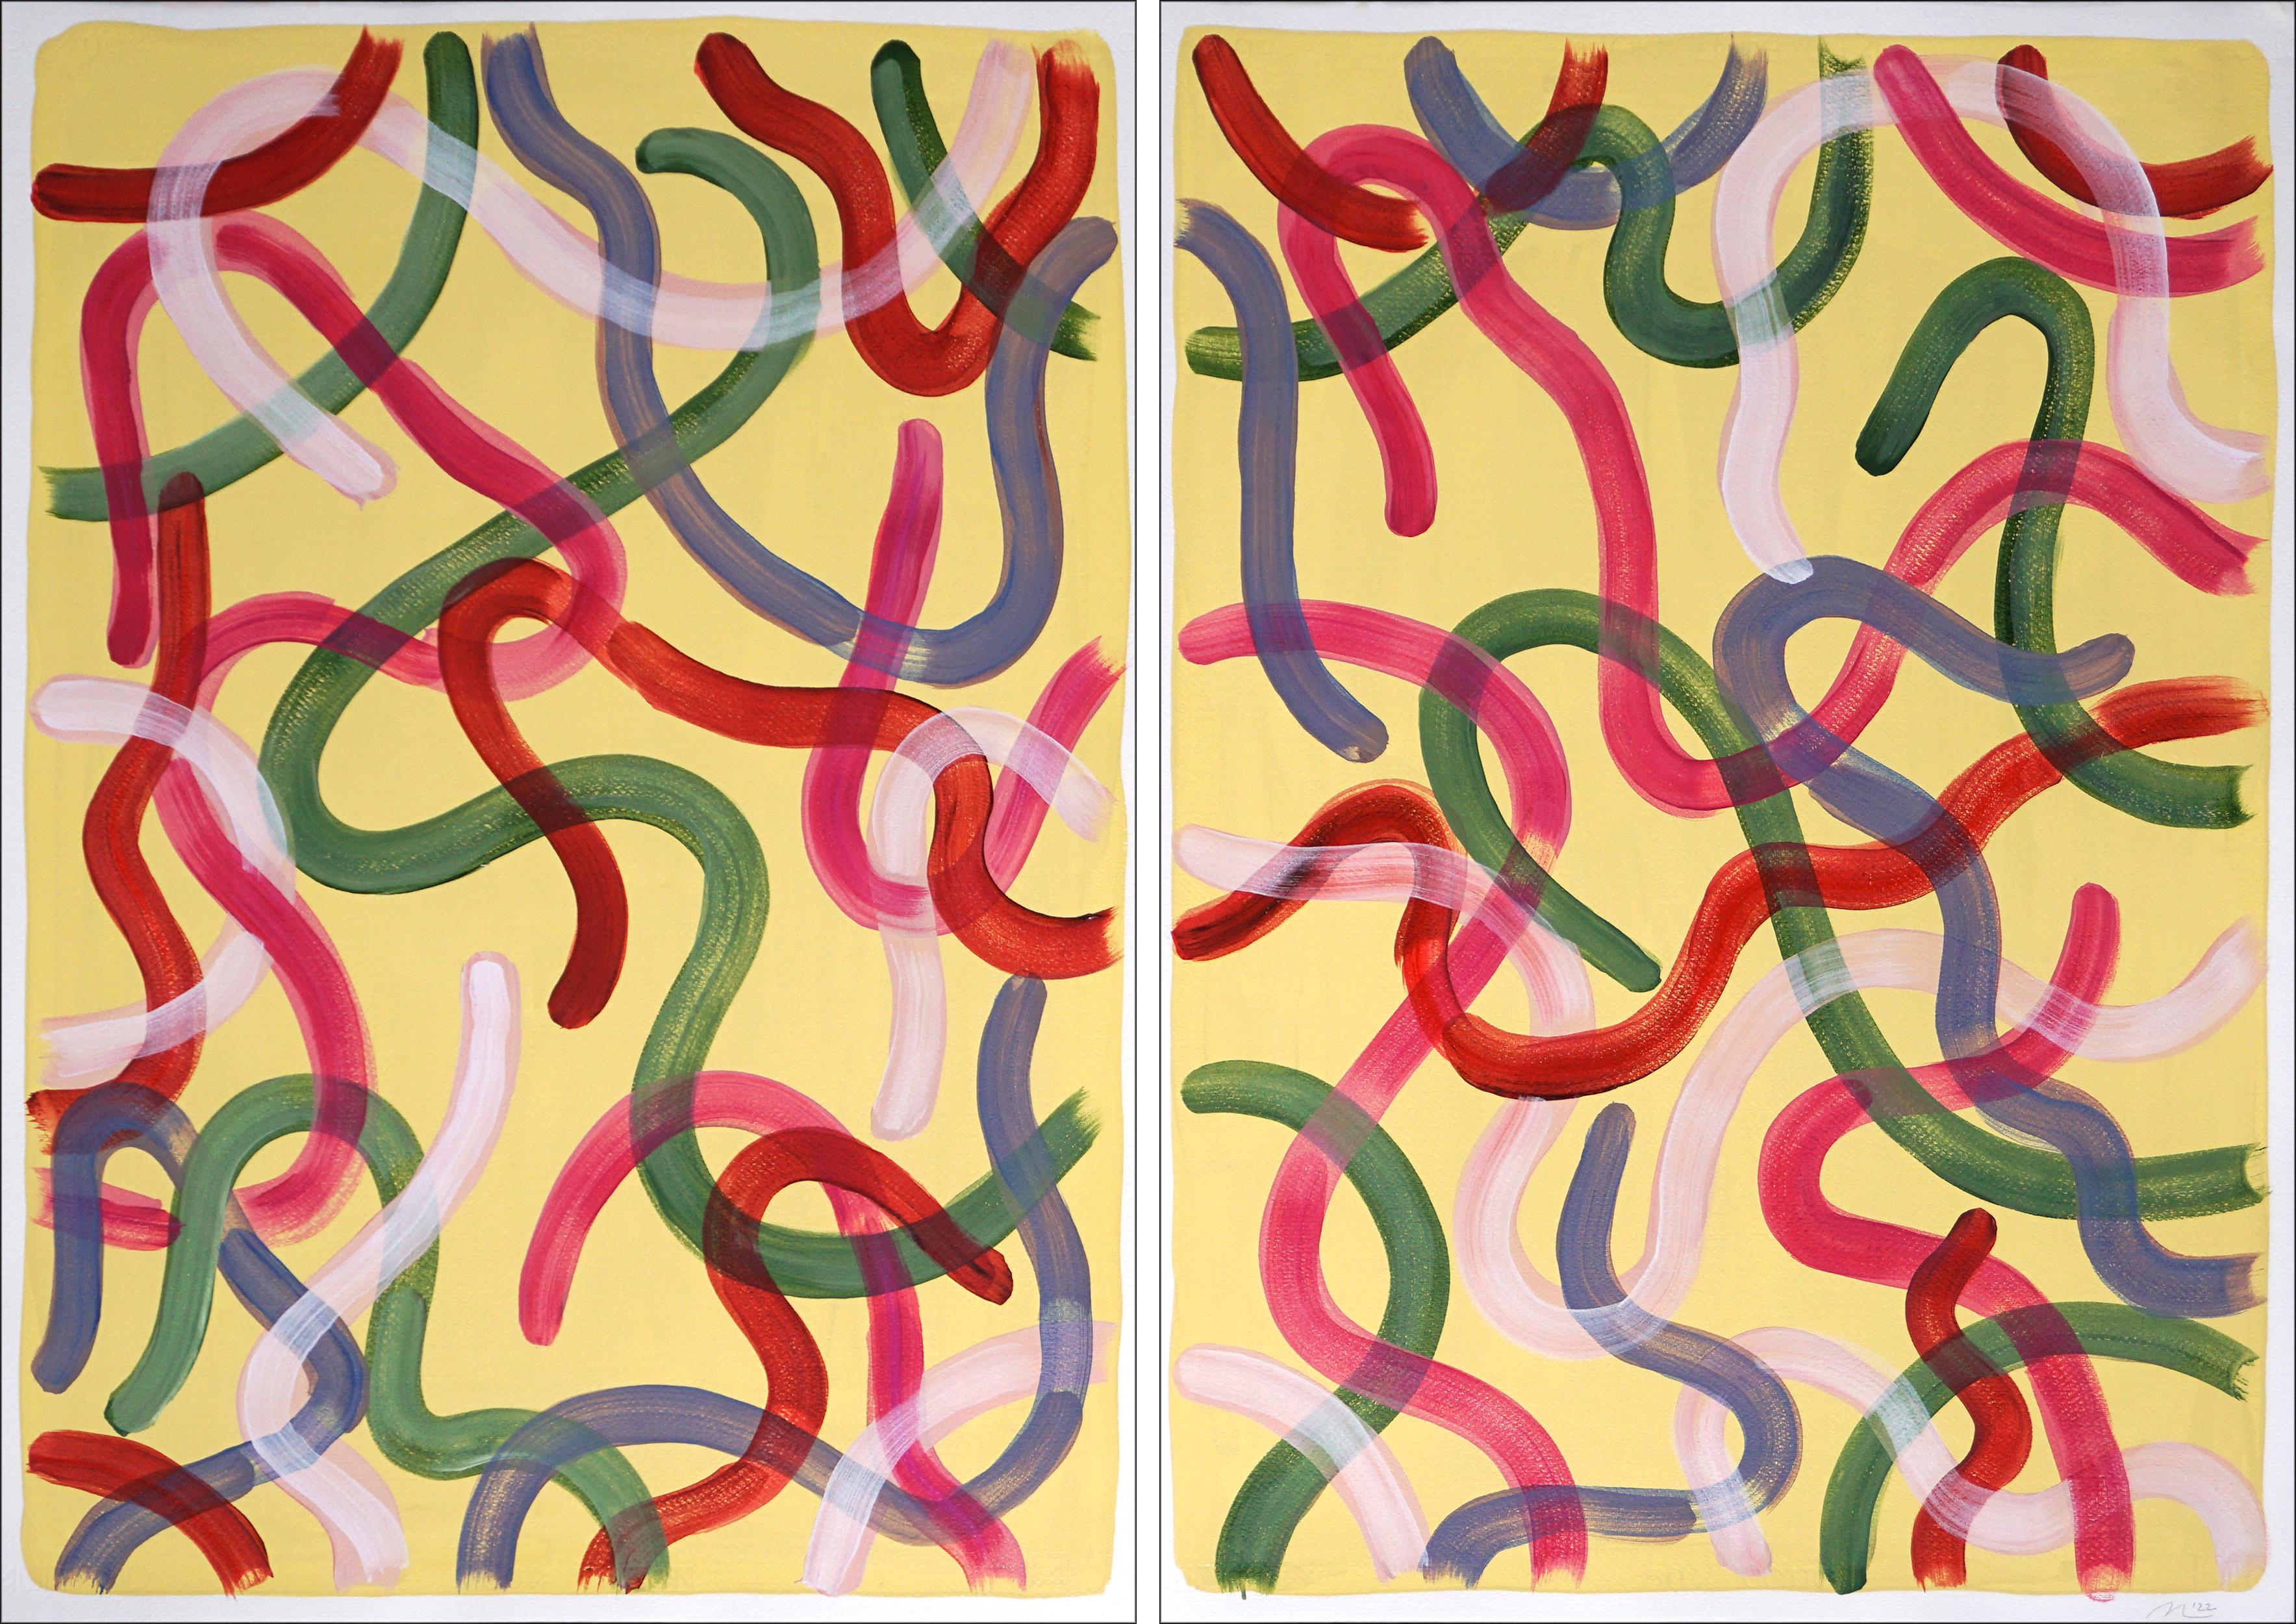 Vivid Gestures on Vanilla, duo de coups de pinceau organiques, rouge, vert, rose, Urban